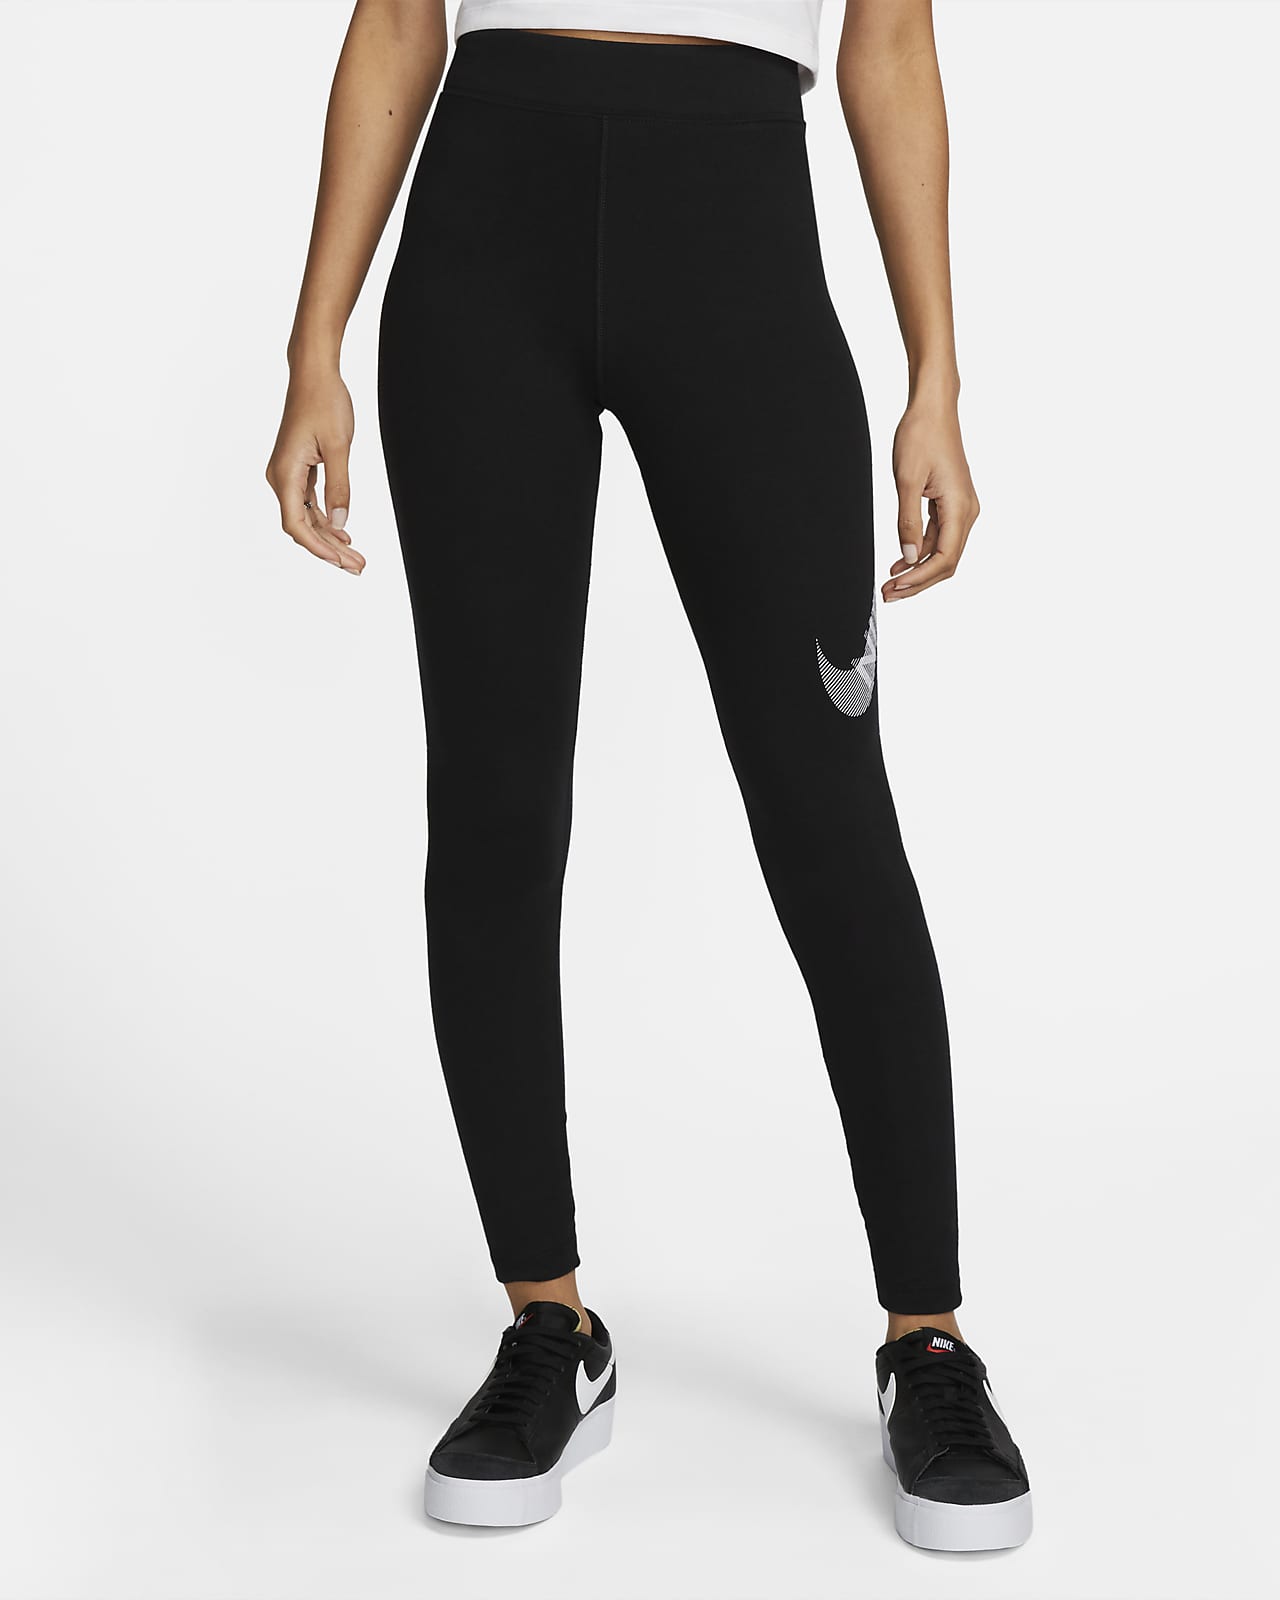 Leggings con logo de la marca Club de Nike  Ropa fitness, Ropa deportiva  adidas, Ropa gym